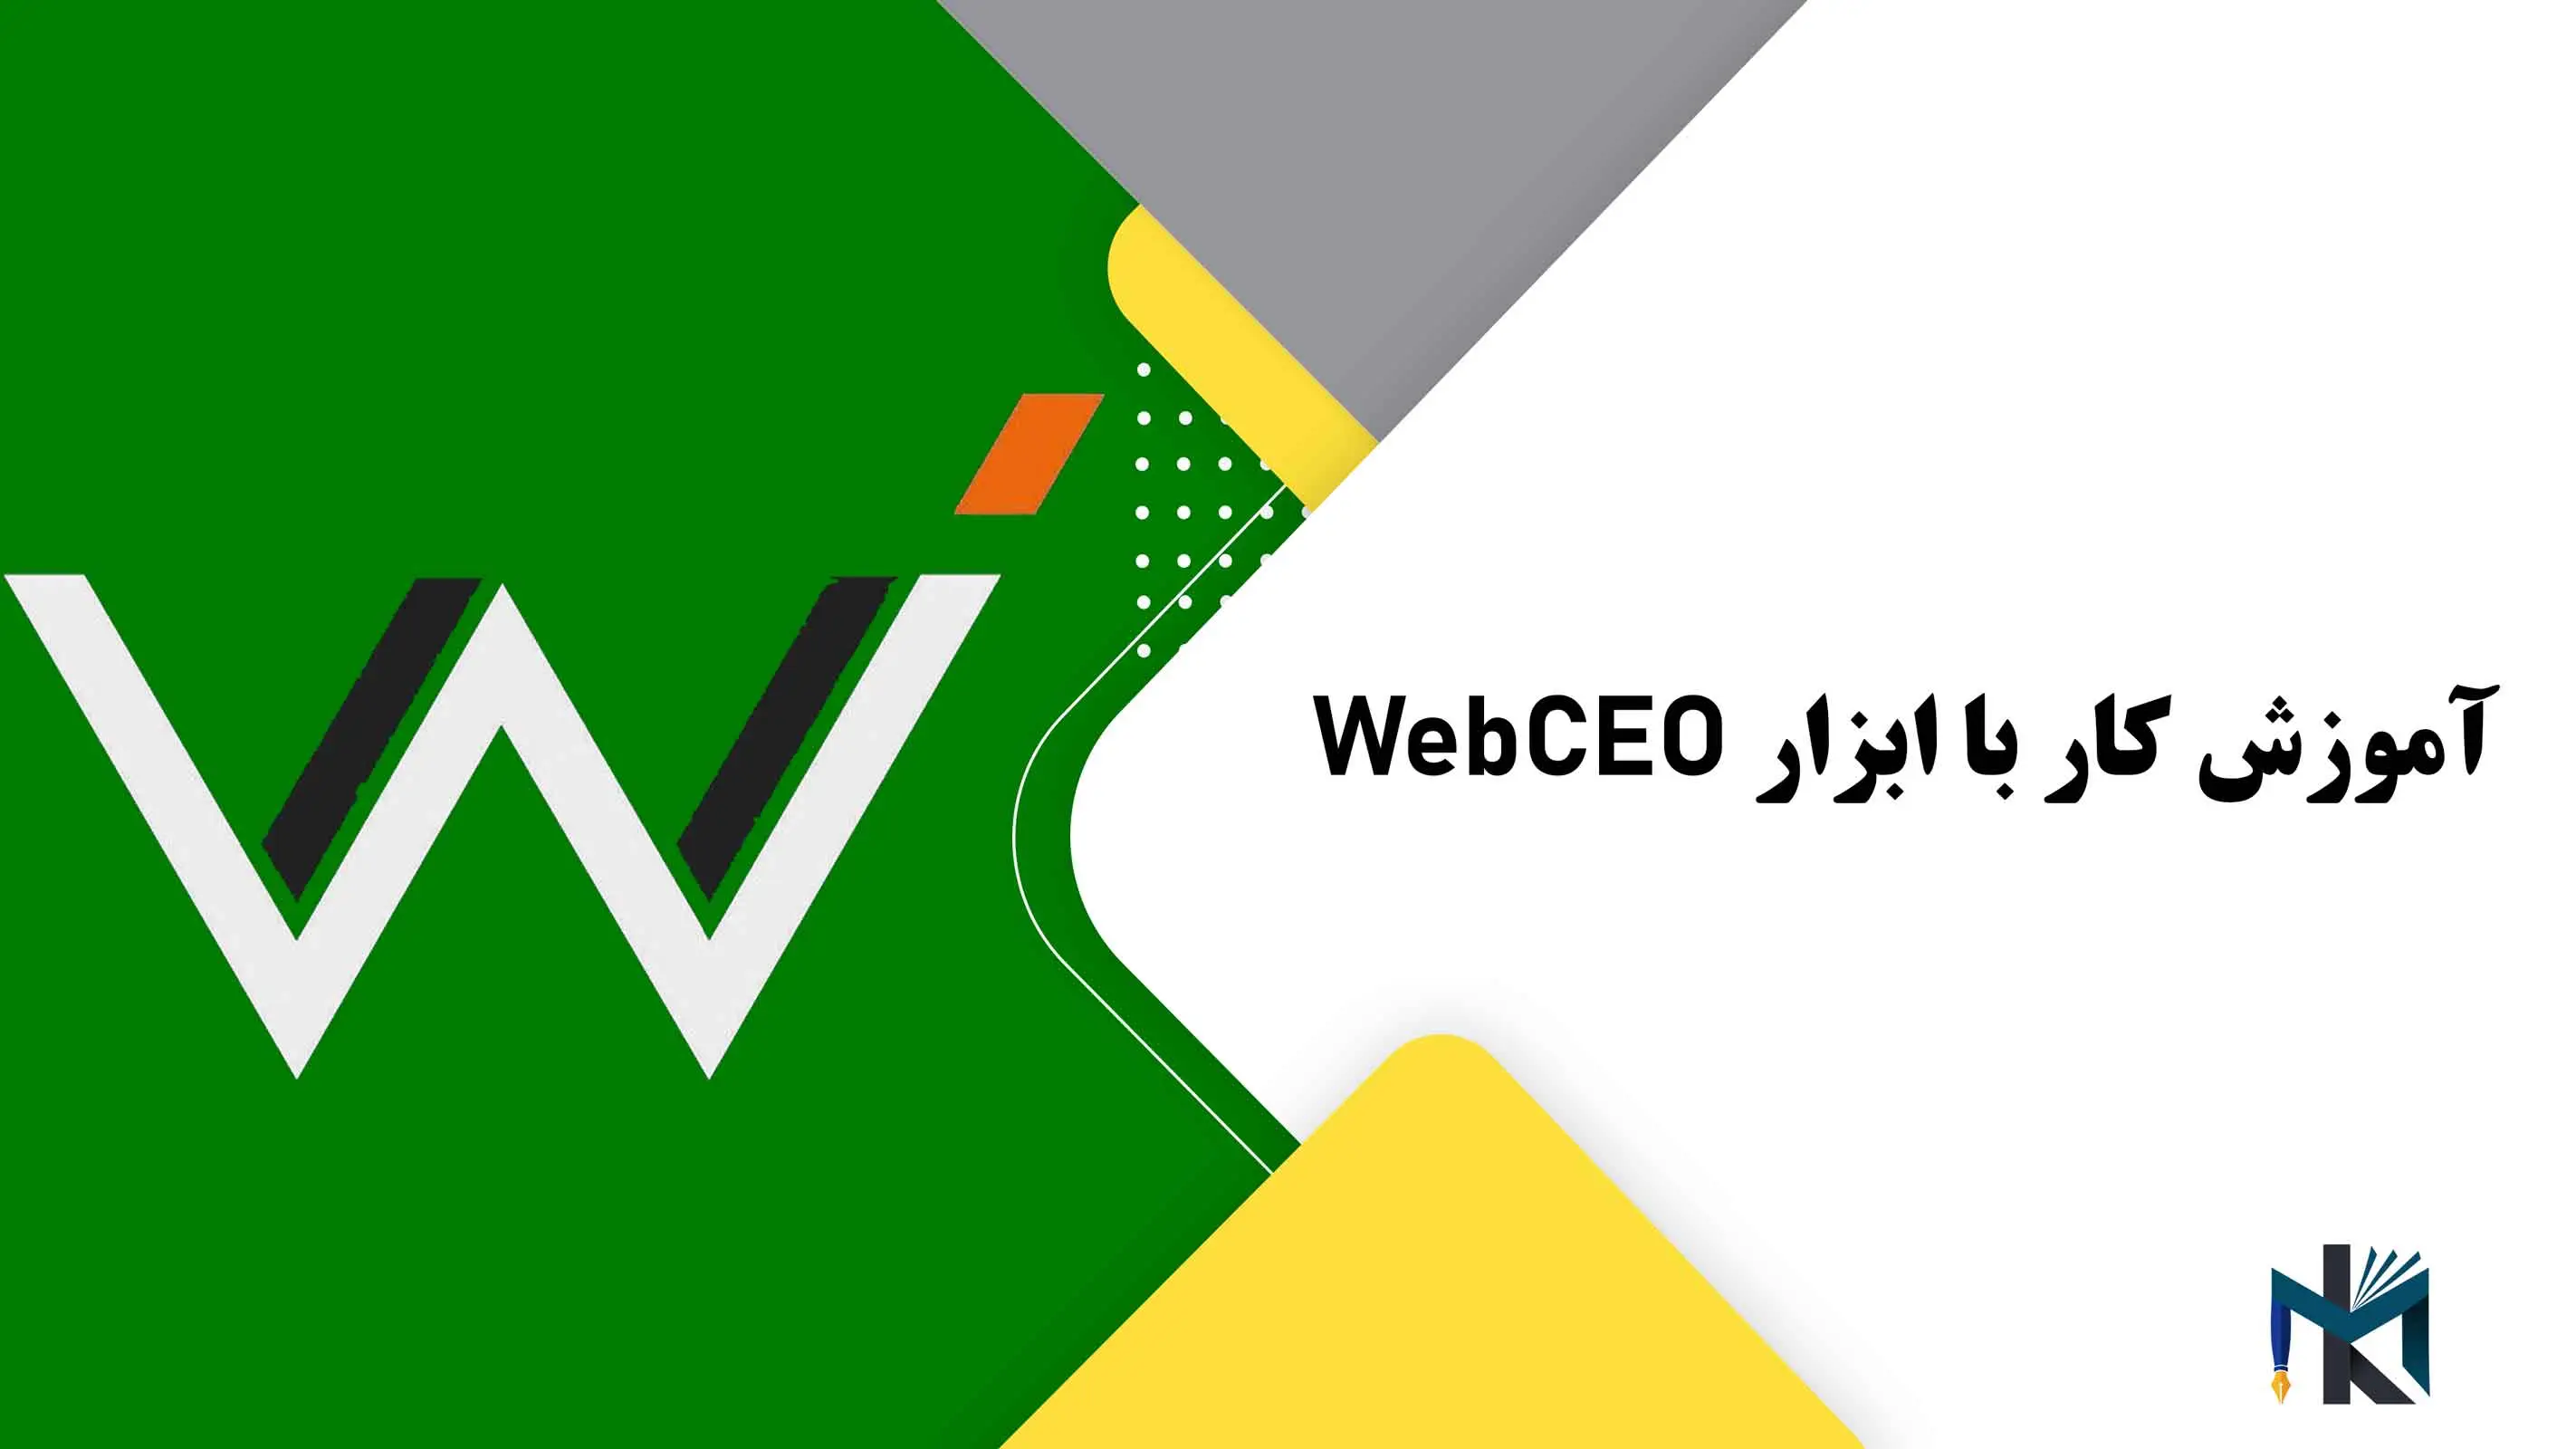 درس پانزدهم: آموزش کار با ابزار WebCEO